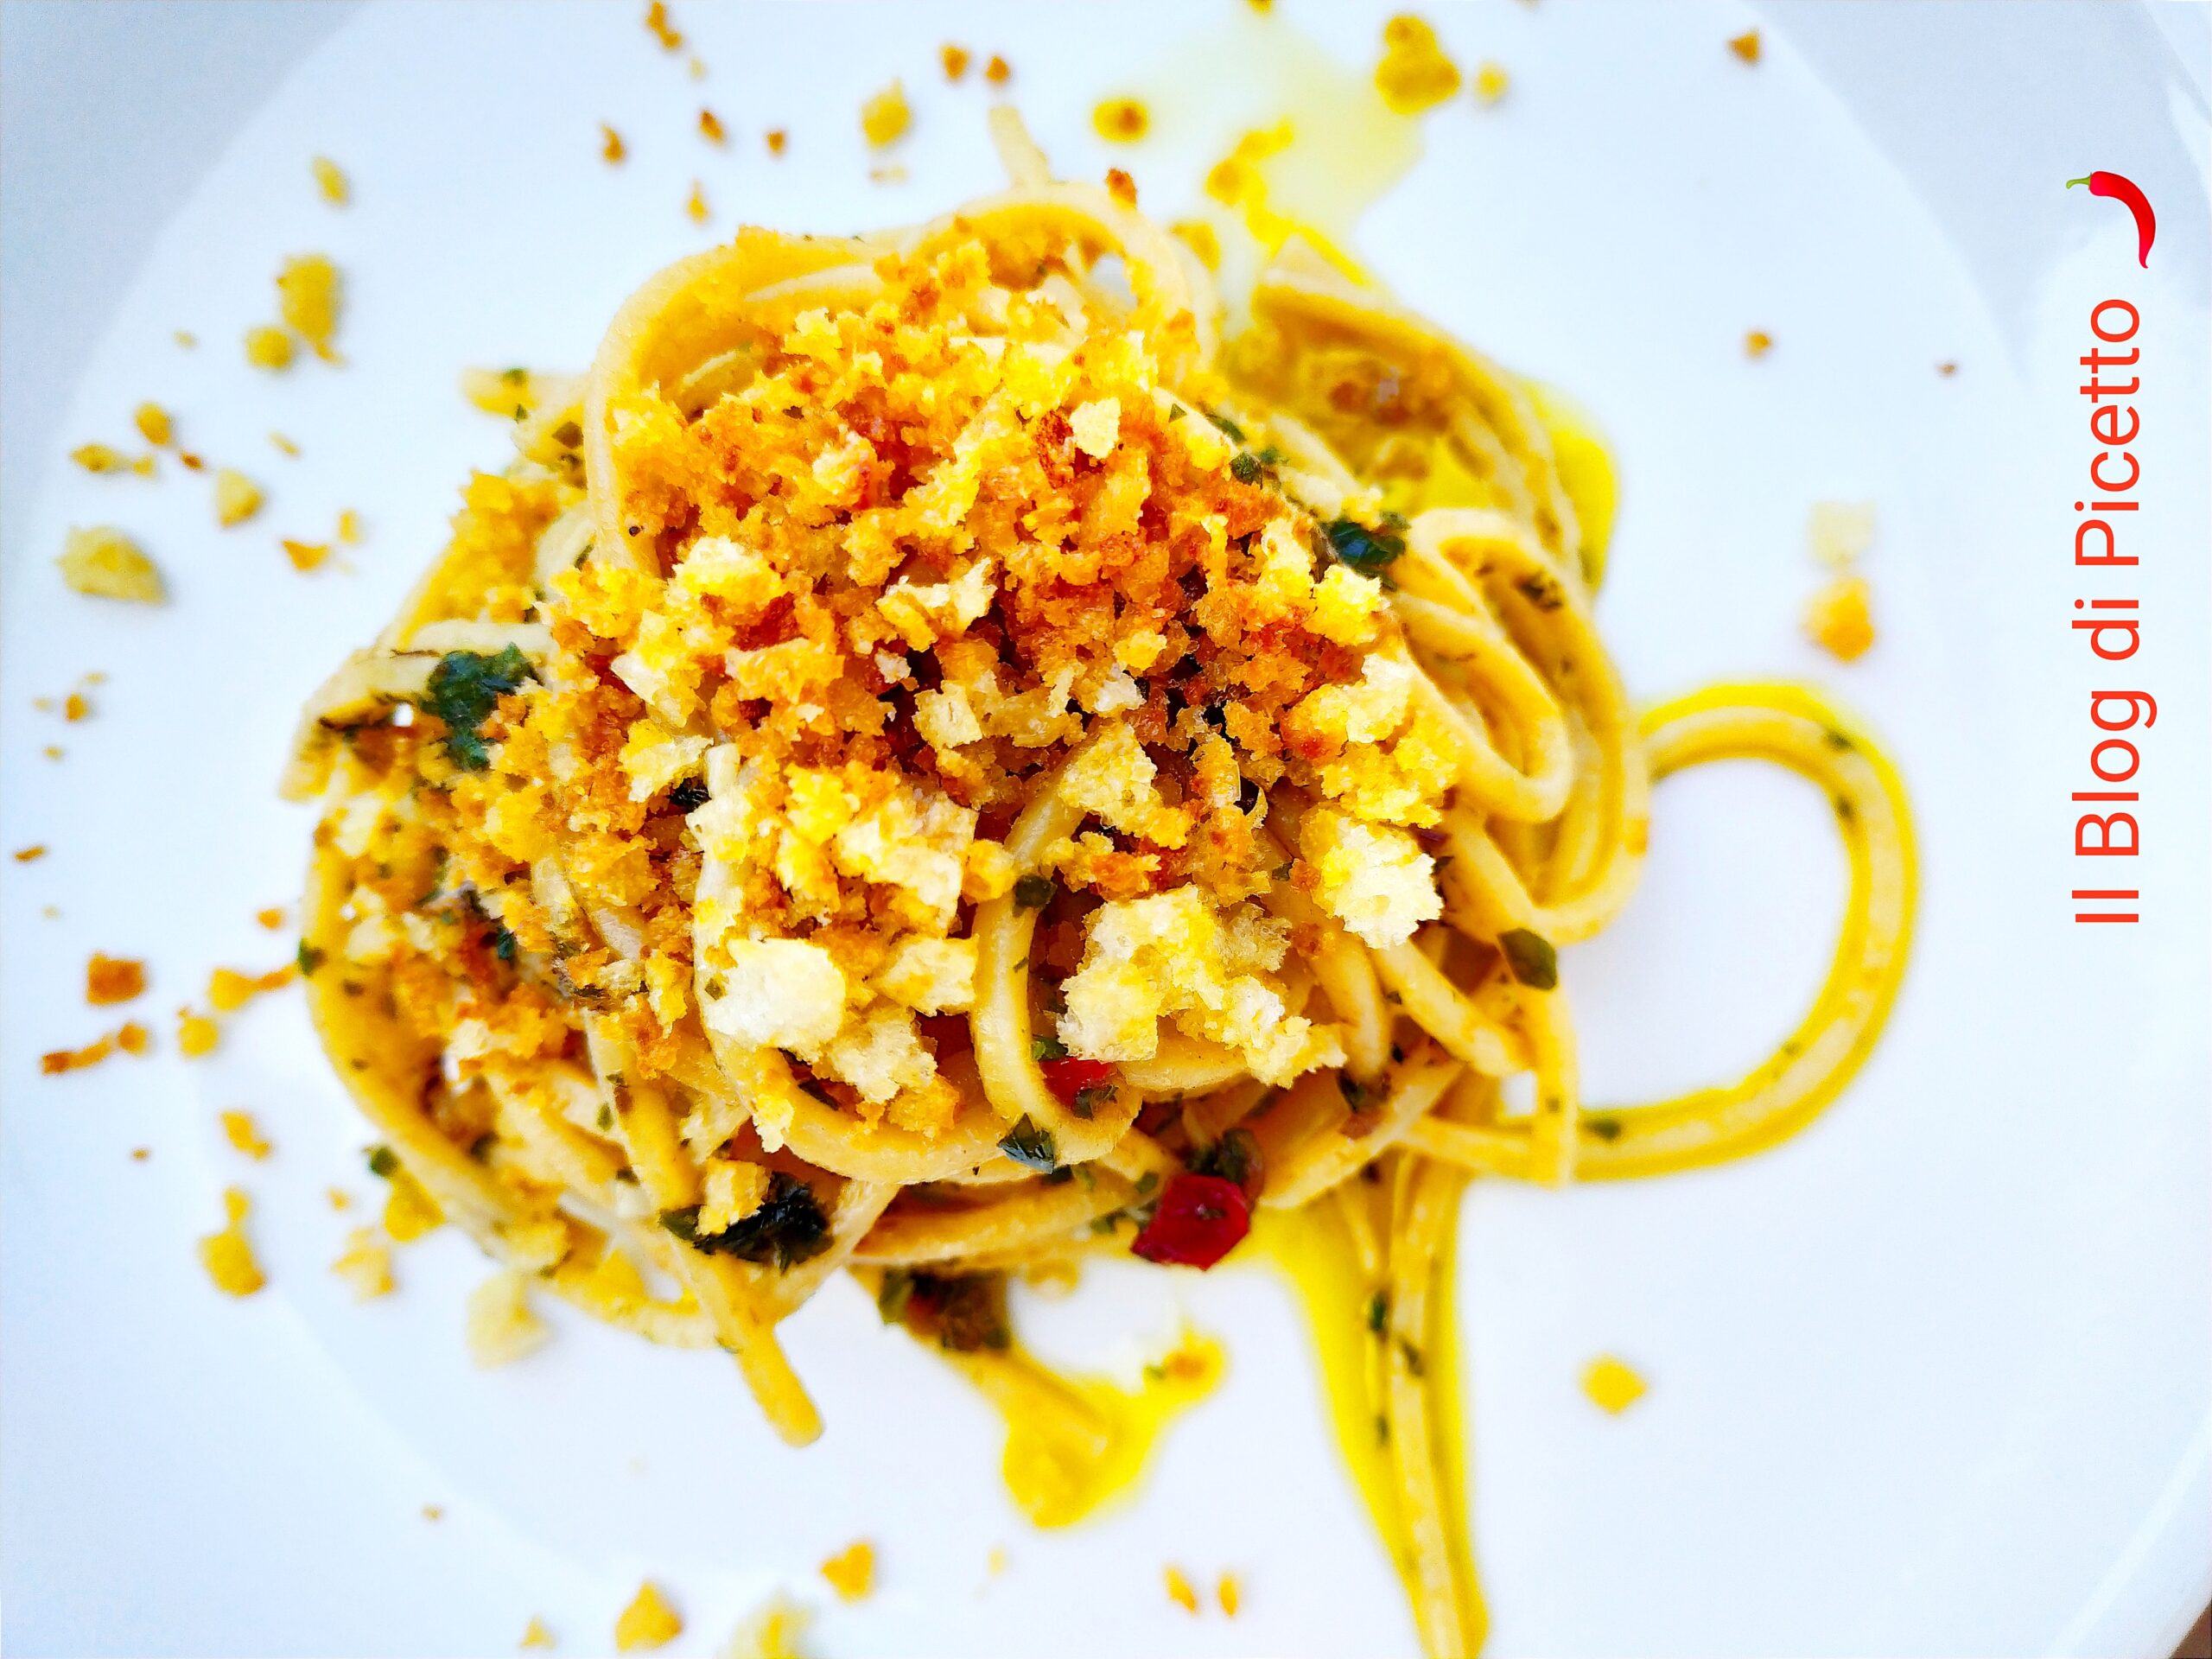 Spaghetti con alici e mollica di pane alla calabrese - Il Blog di Picetto